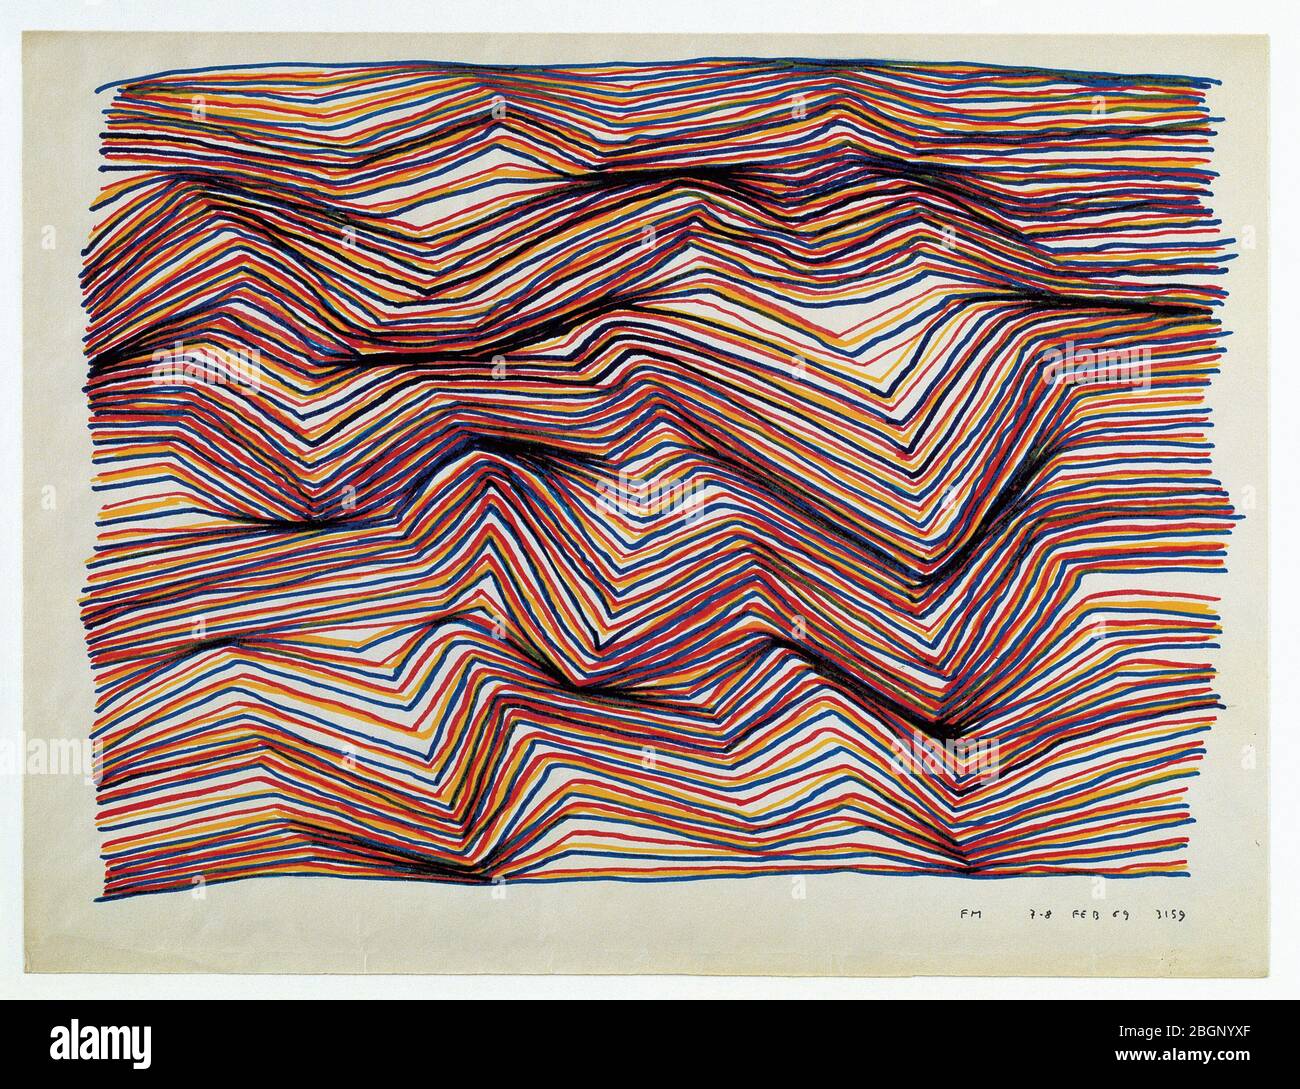 SENZA TITOLO cartella artwork compensato materiale inerte tempera Fernando Melani CAMUSAC Museum Contemporary Art Cassino Italy Stock Photo